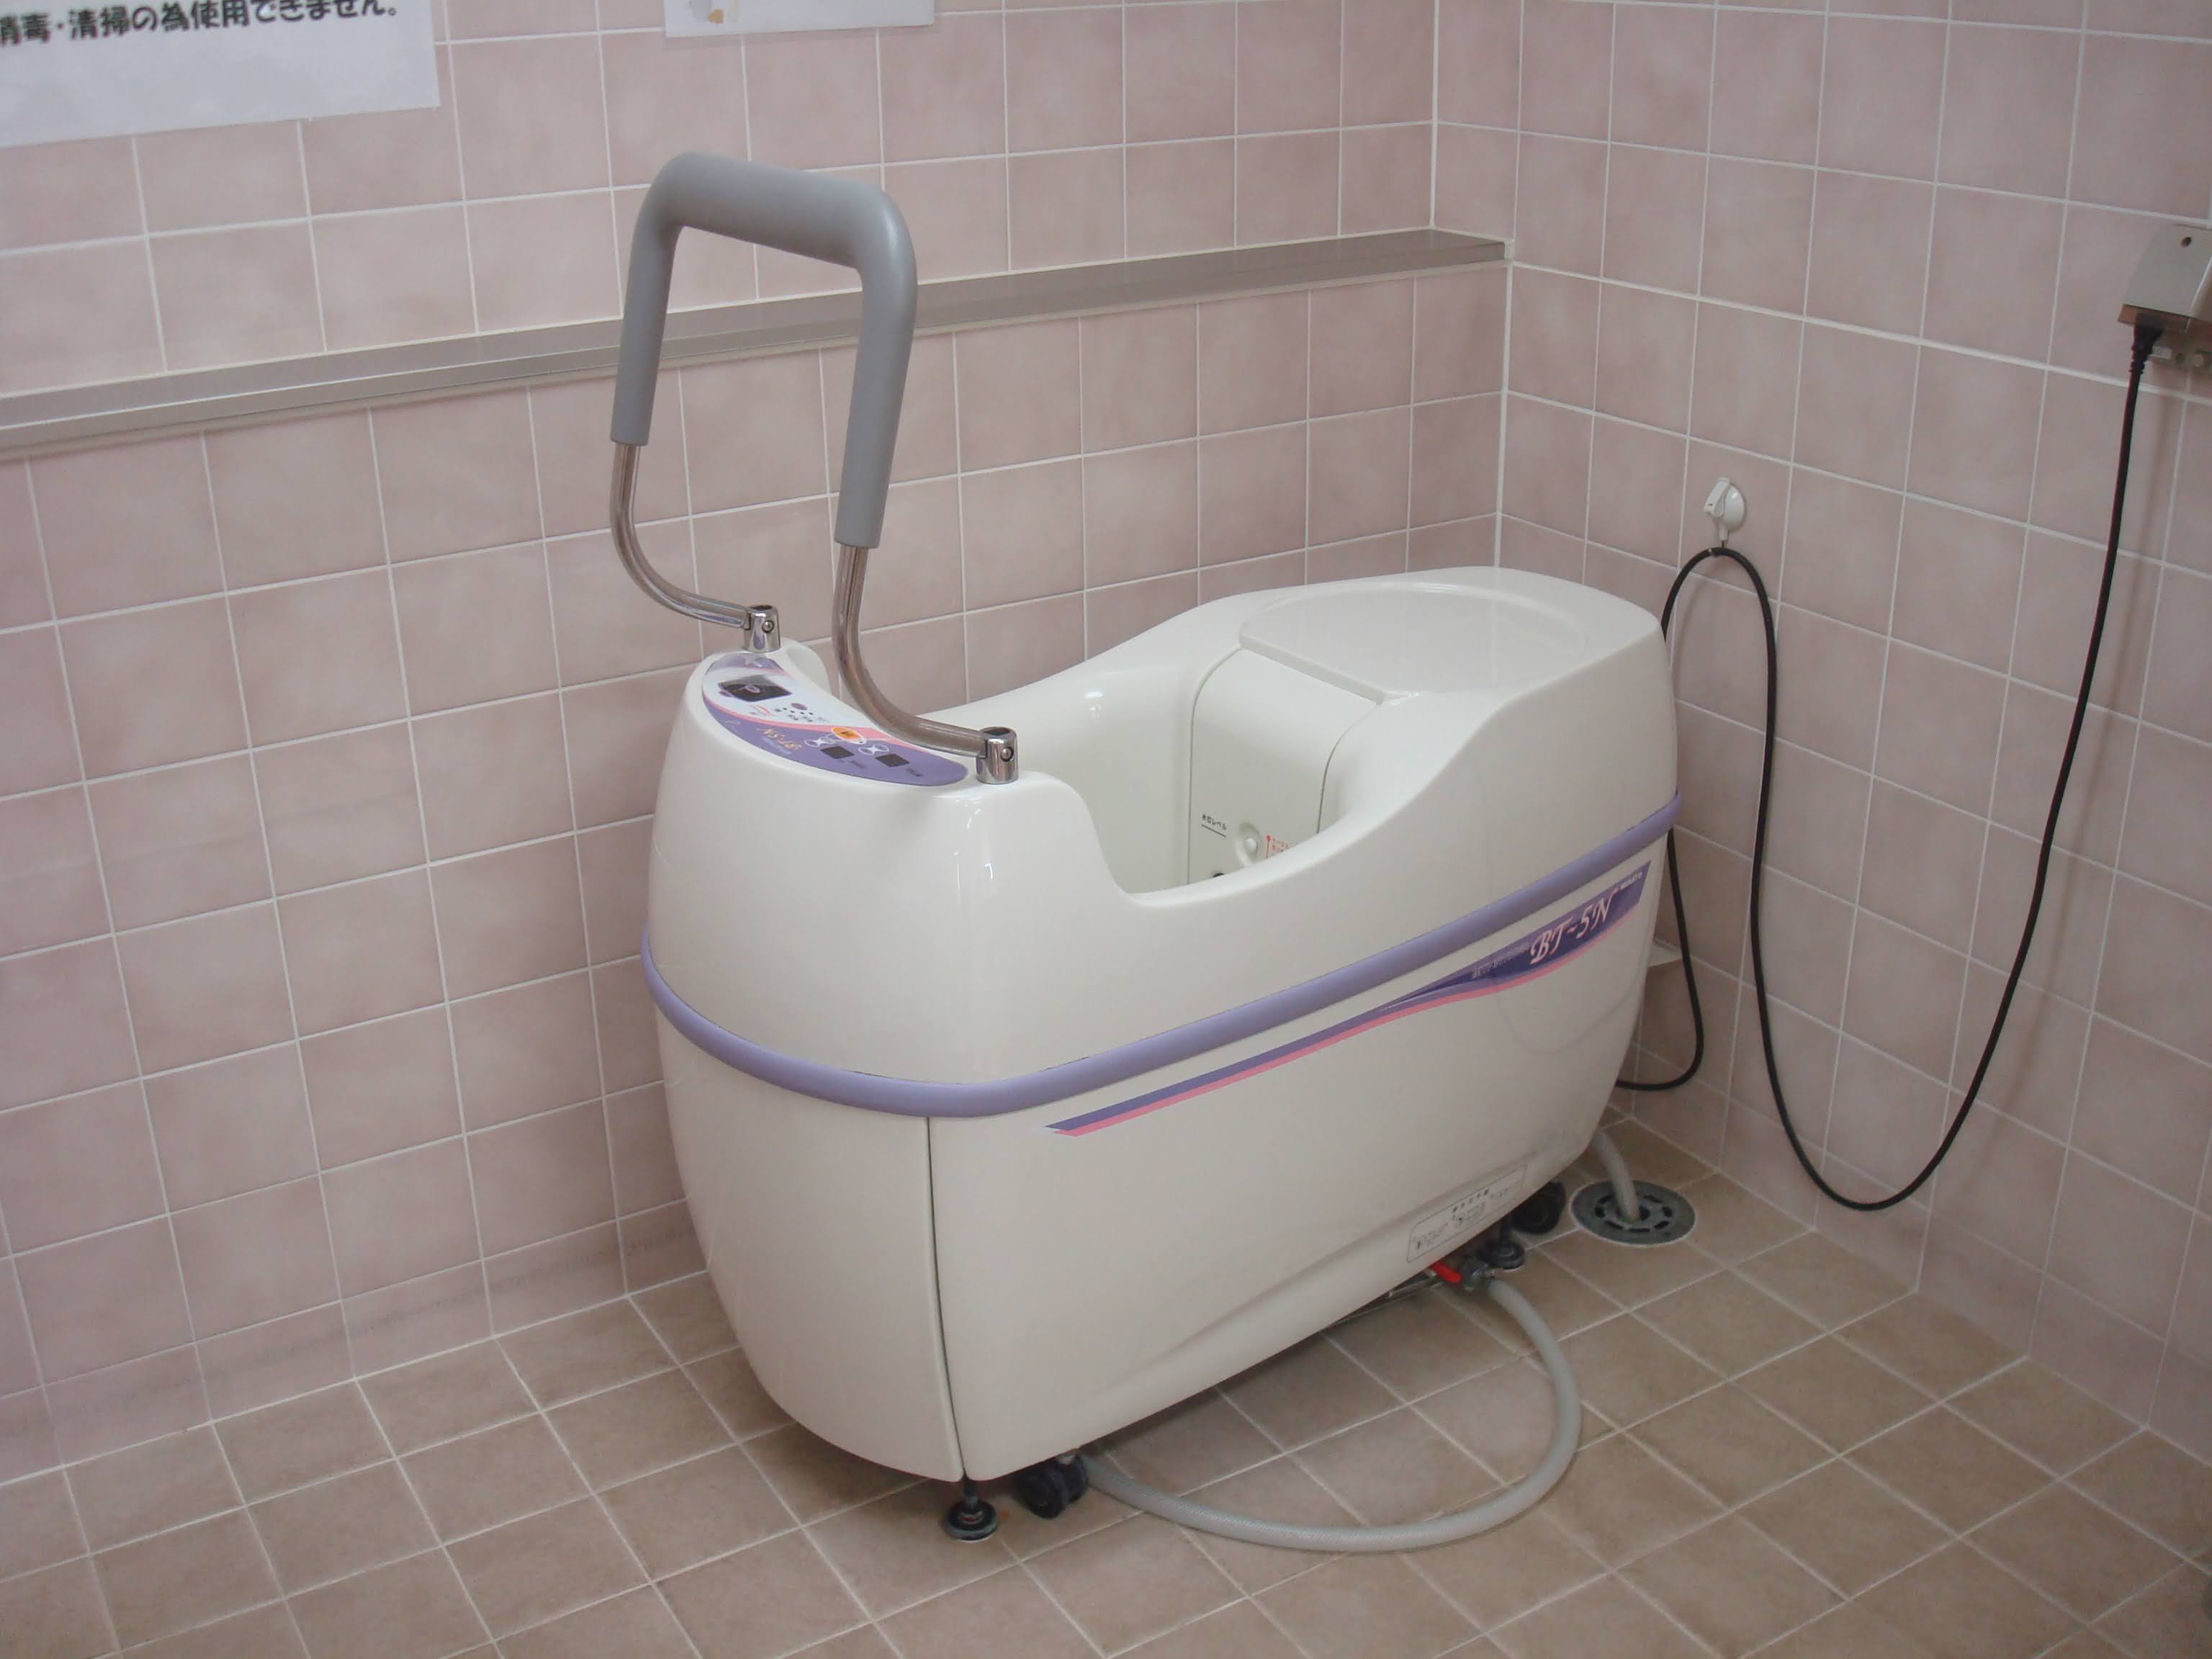 渦流浴装置(バイブラバス)｜物理療法機器の紹介_b0329026_20545179.jpg